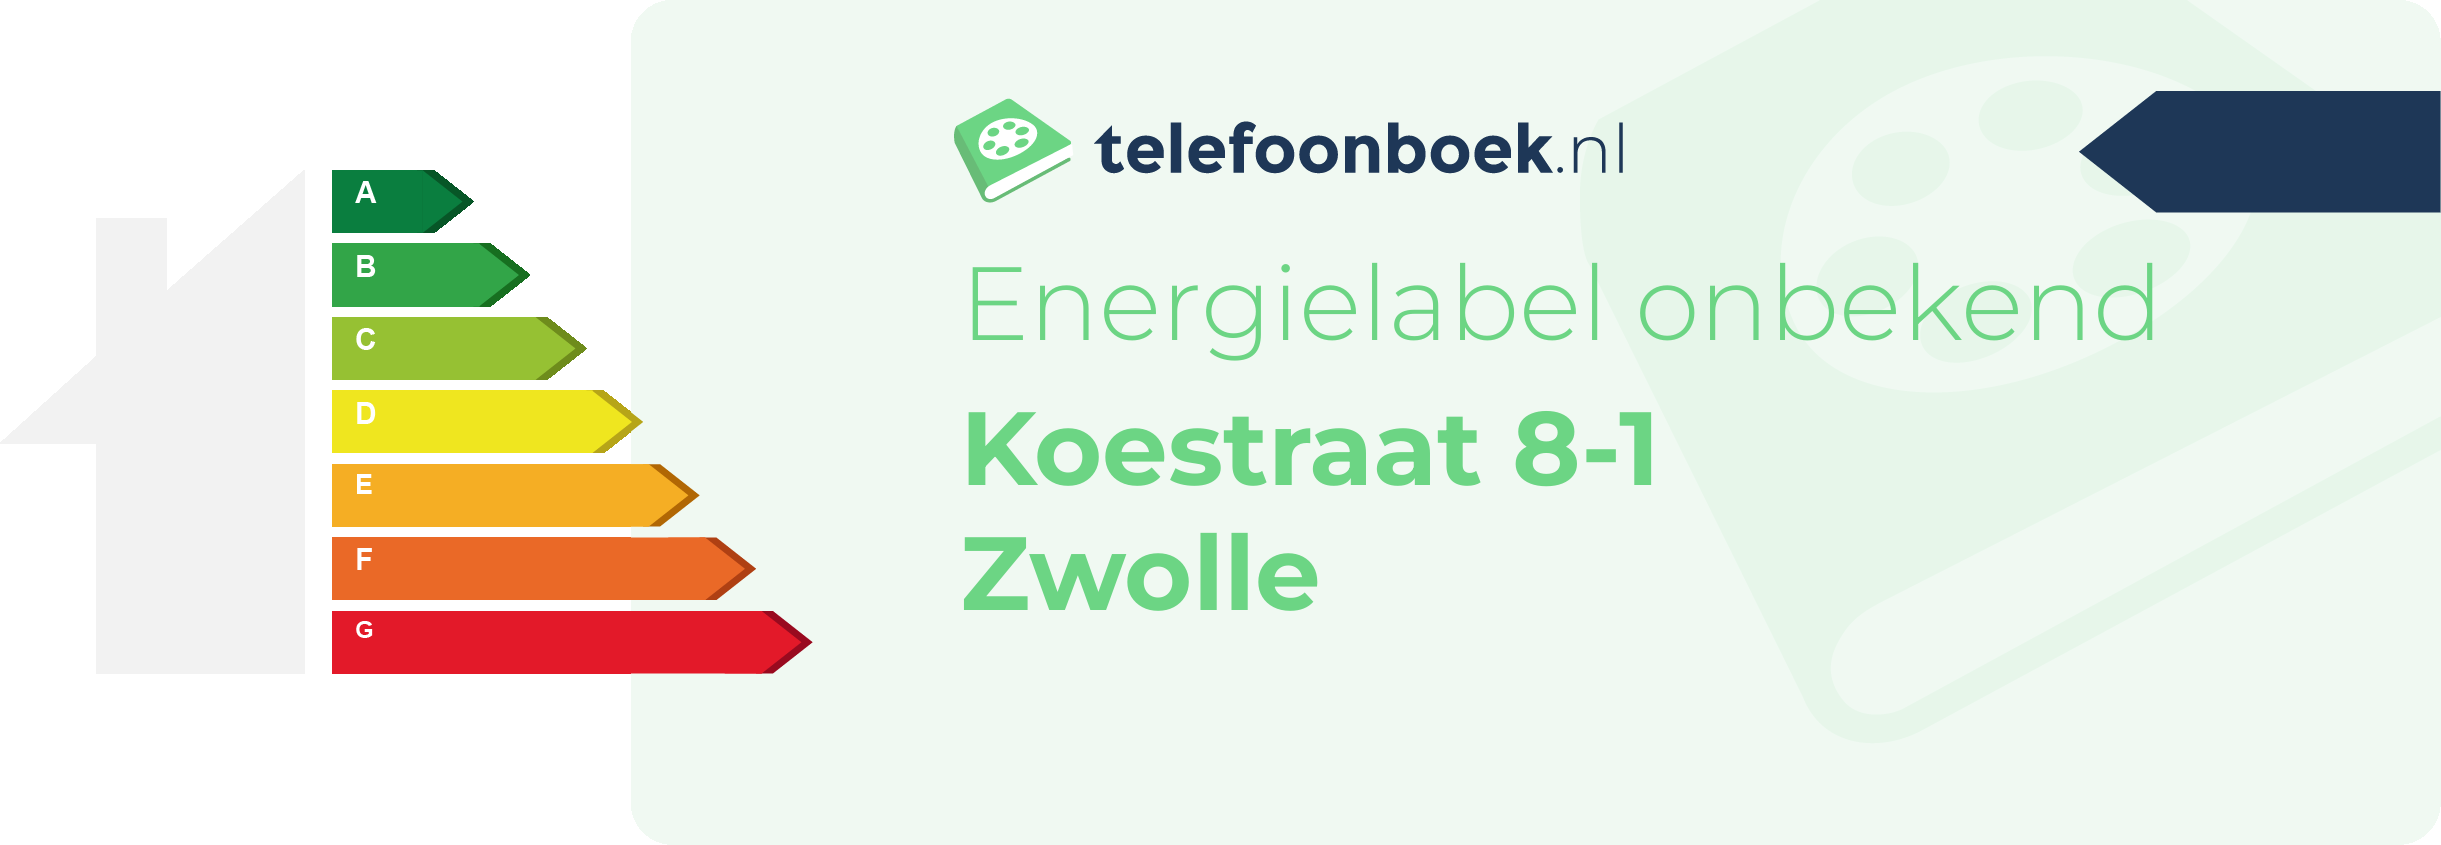 Energielabel Koestraat 8-1 Zwolle